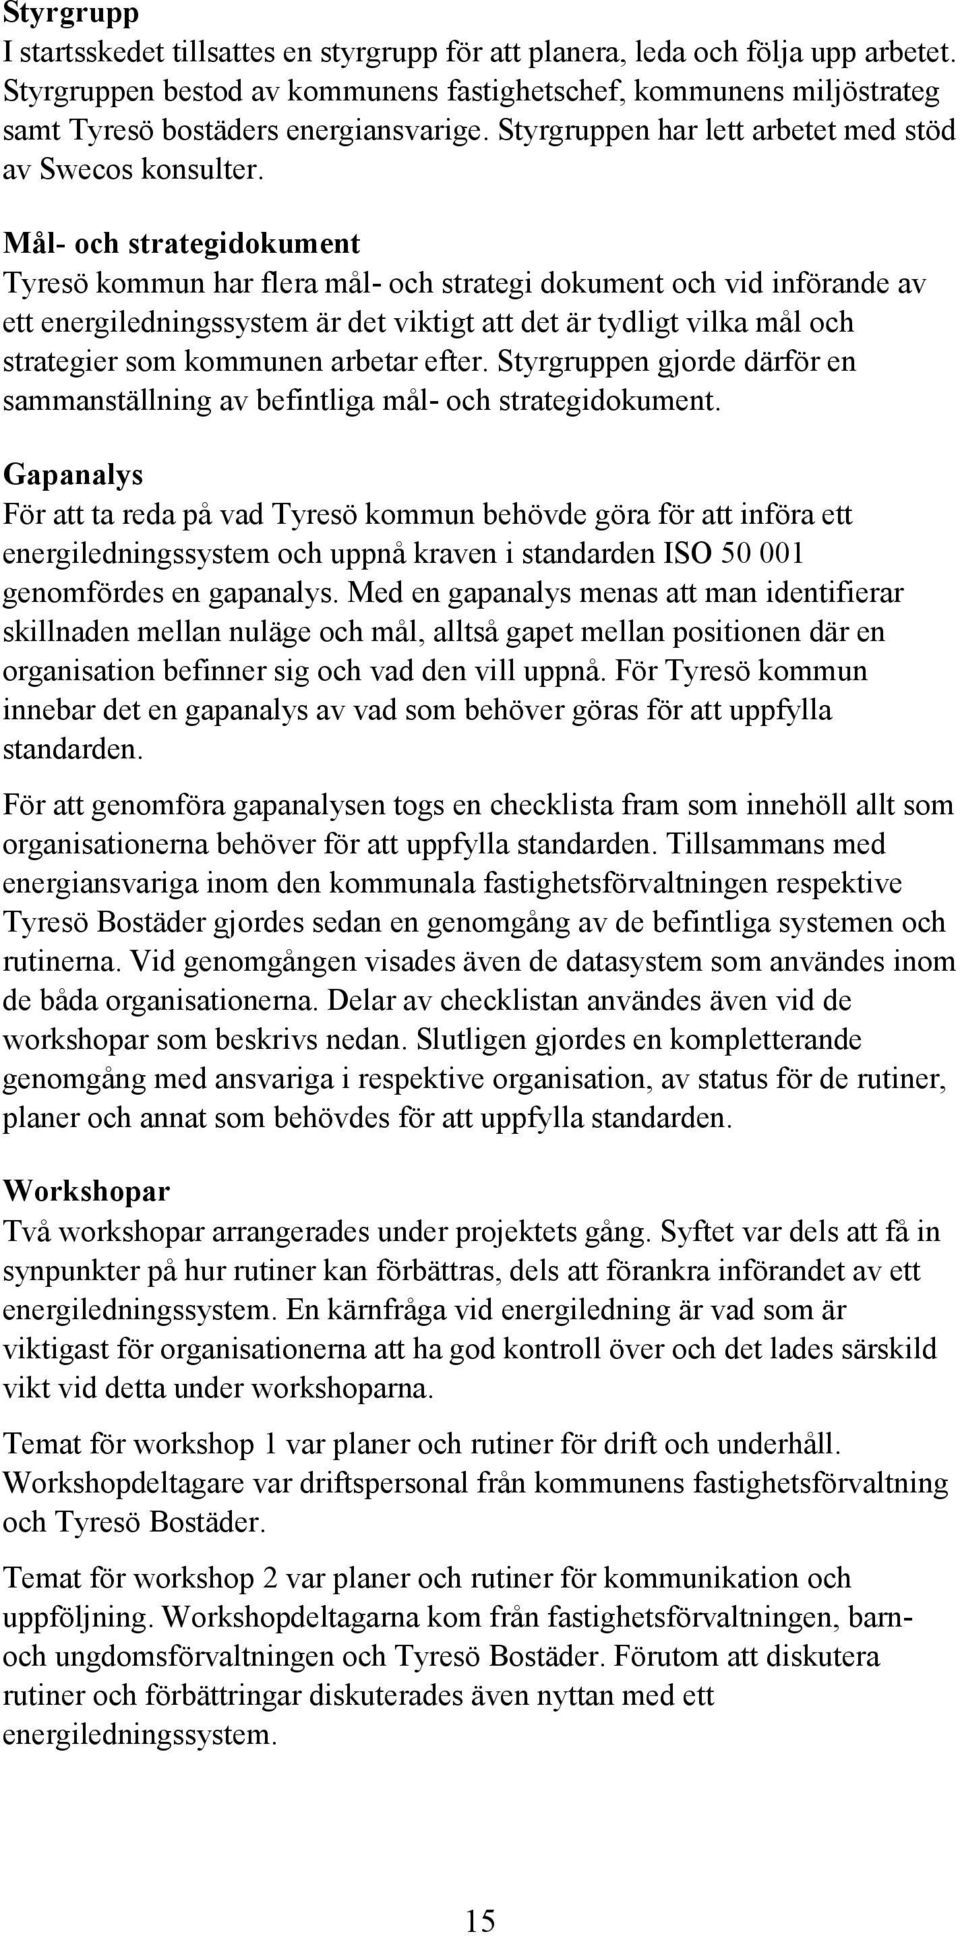 Mål- och strategidokument Tyresö kommun har flera mål- och strategi dokument och vid införande av ett energiledningssystem är det viktigt att det är tydligt vilka mål och strategier som kommunen